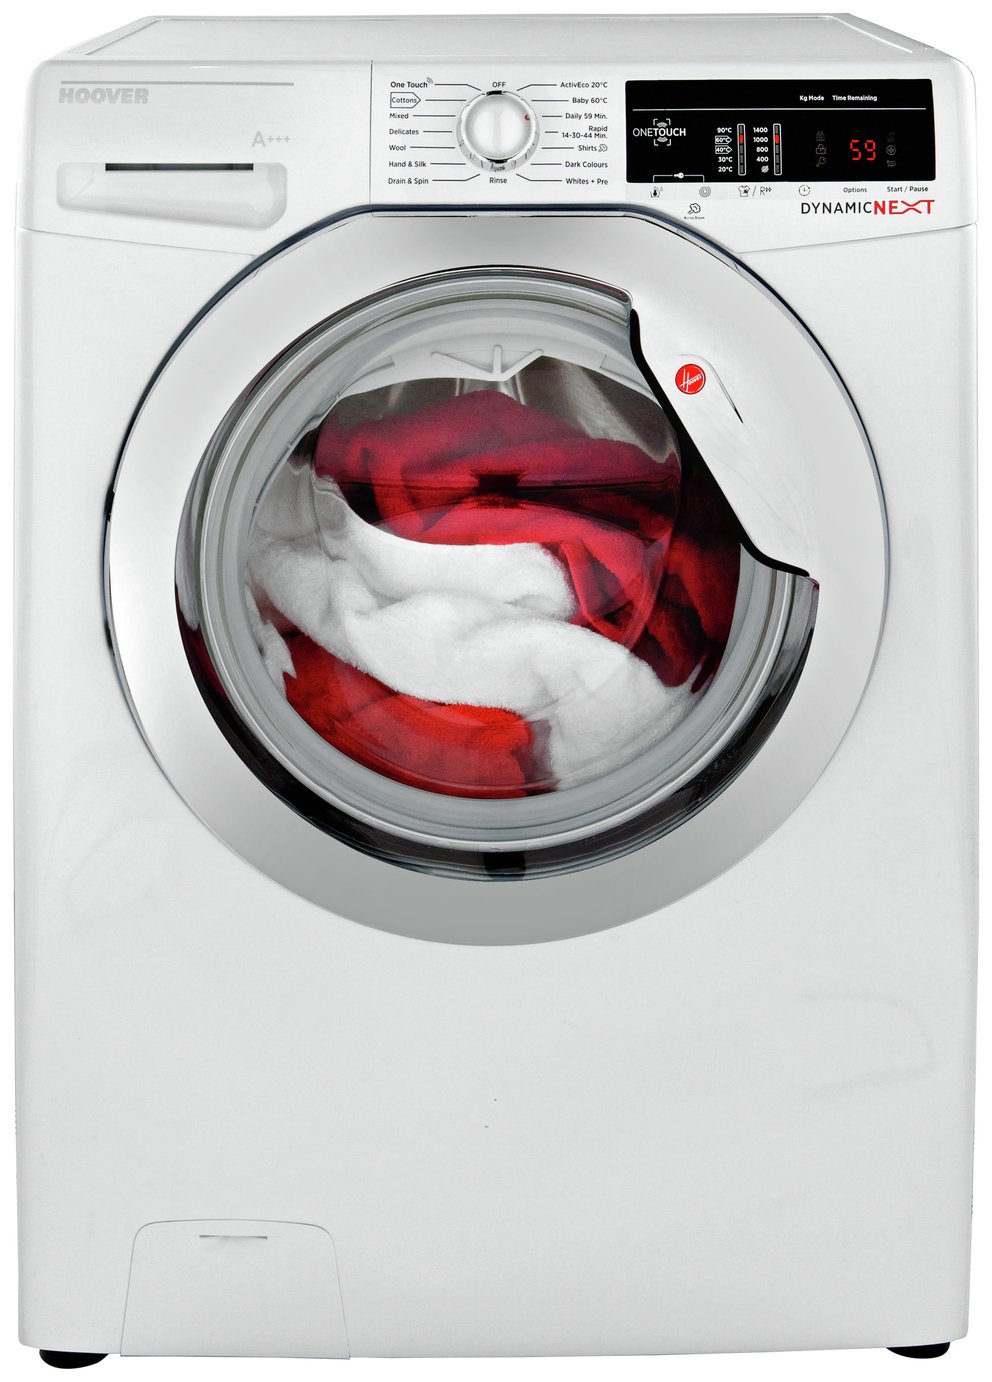 argos washing machine toy